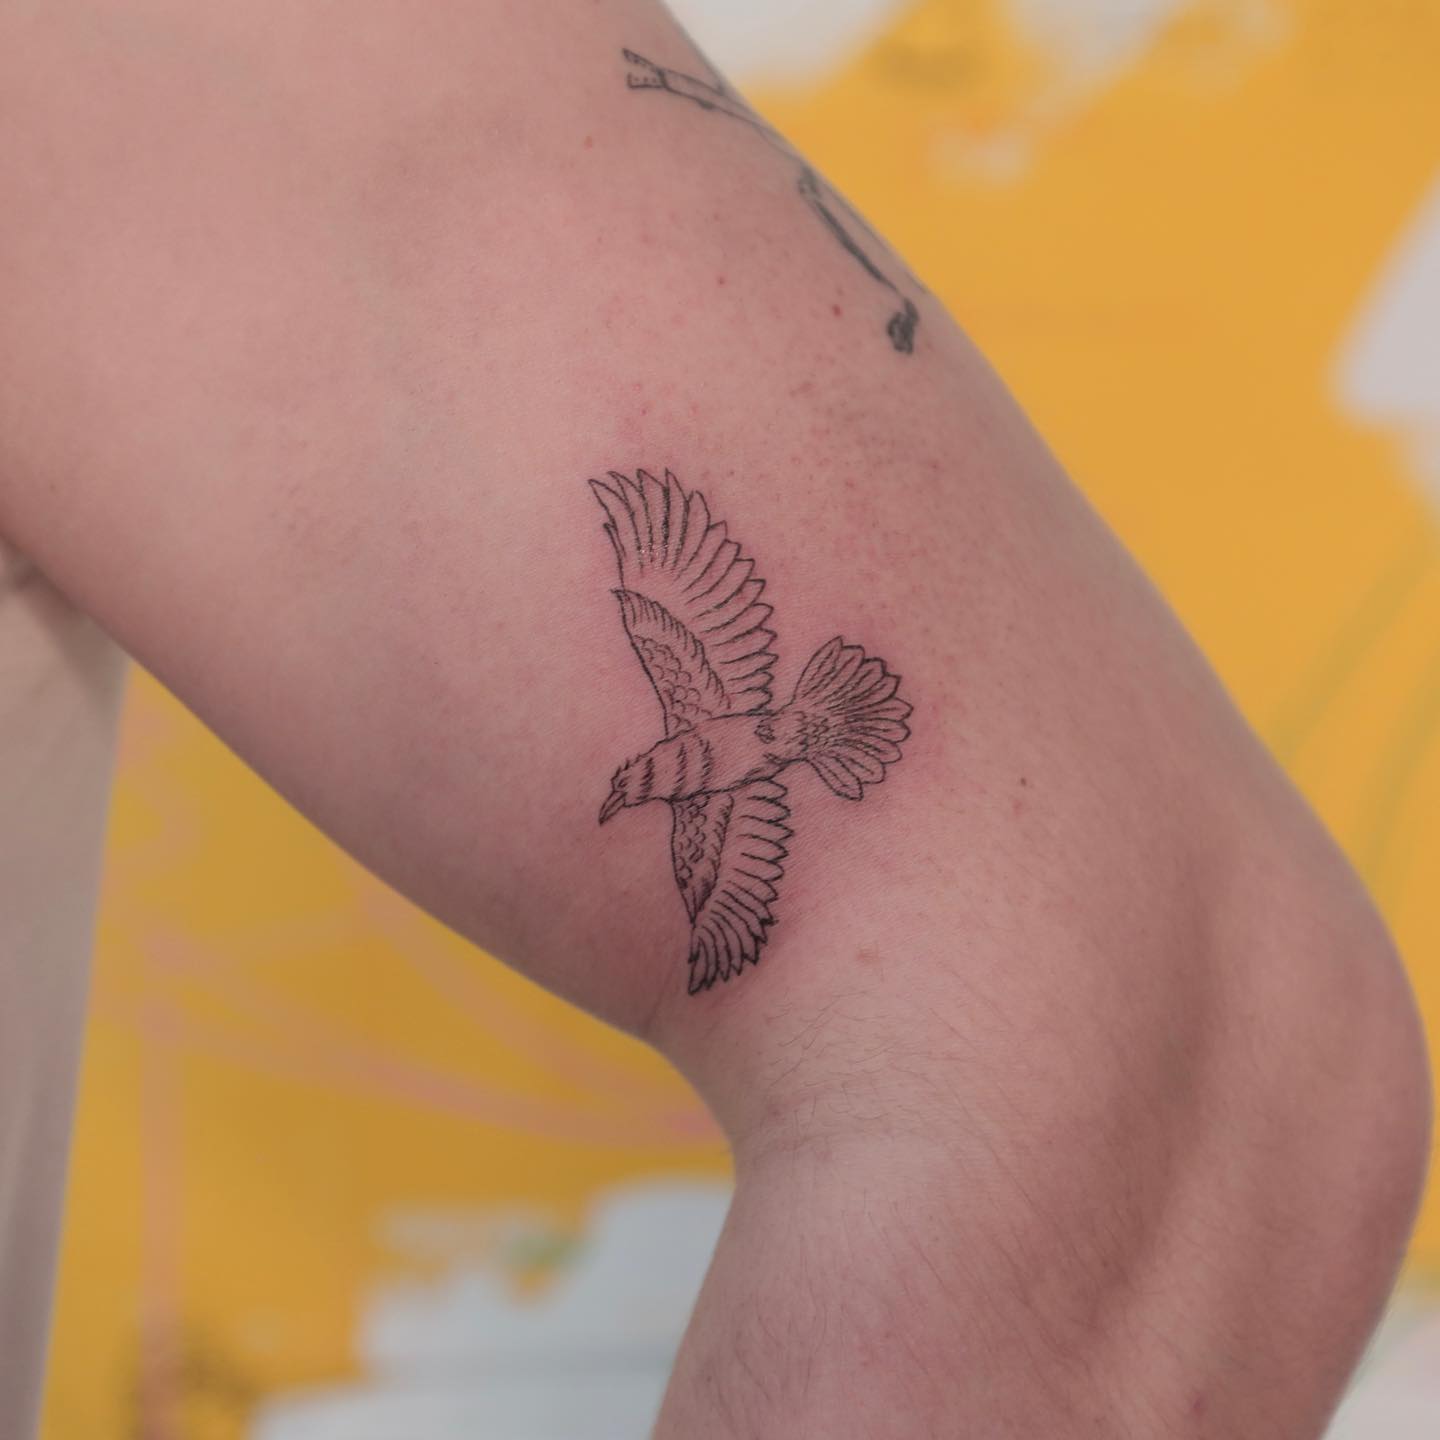 Minimalistic Nordic Raven Tattoo